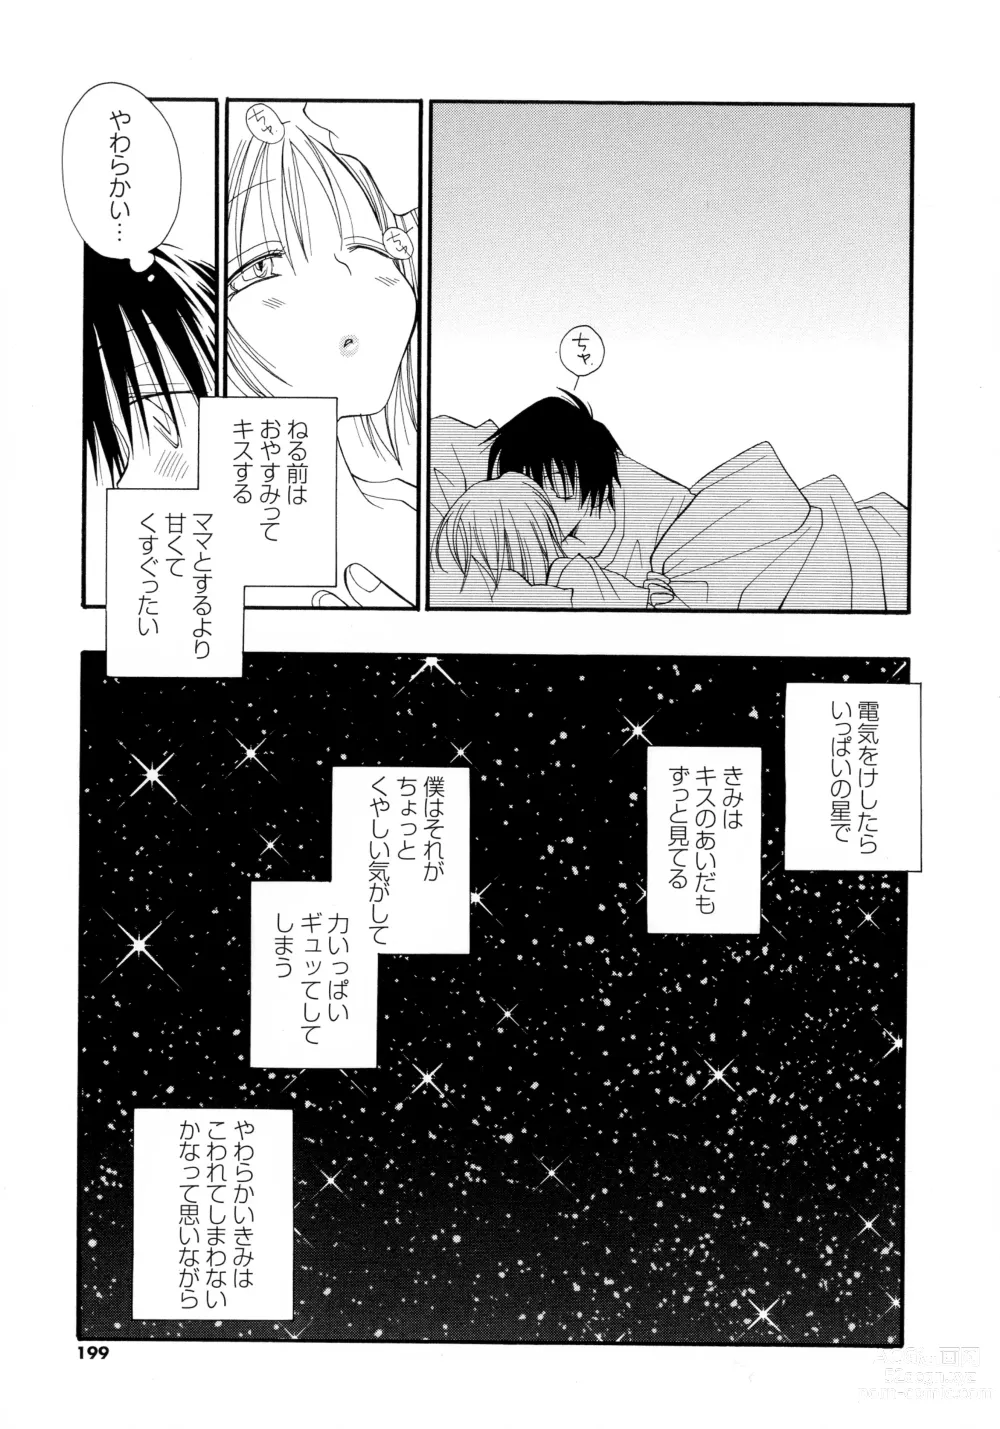 Page 196 of manga Cherry♥Pai Shinsouban